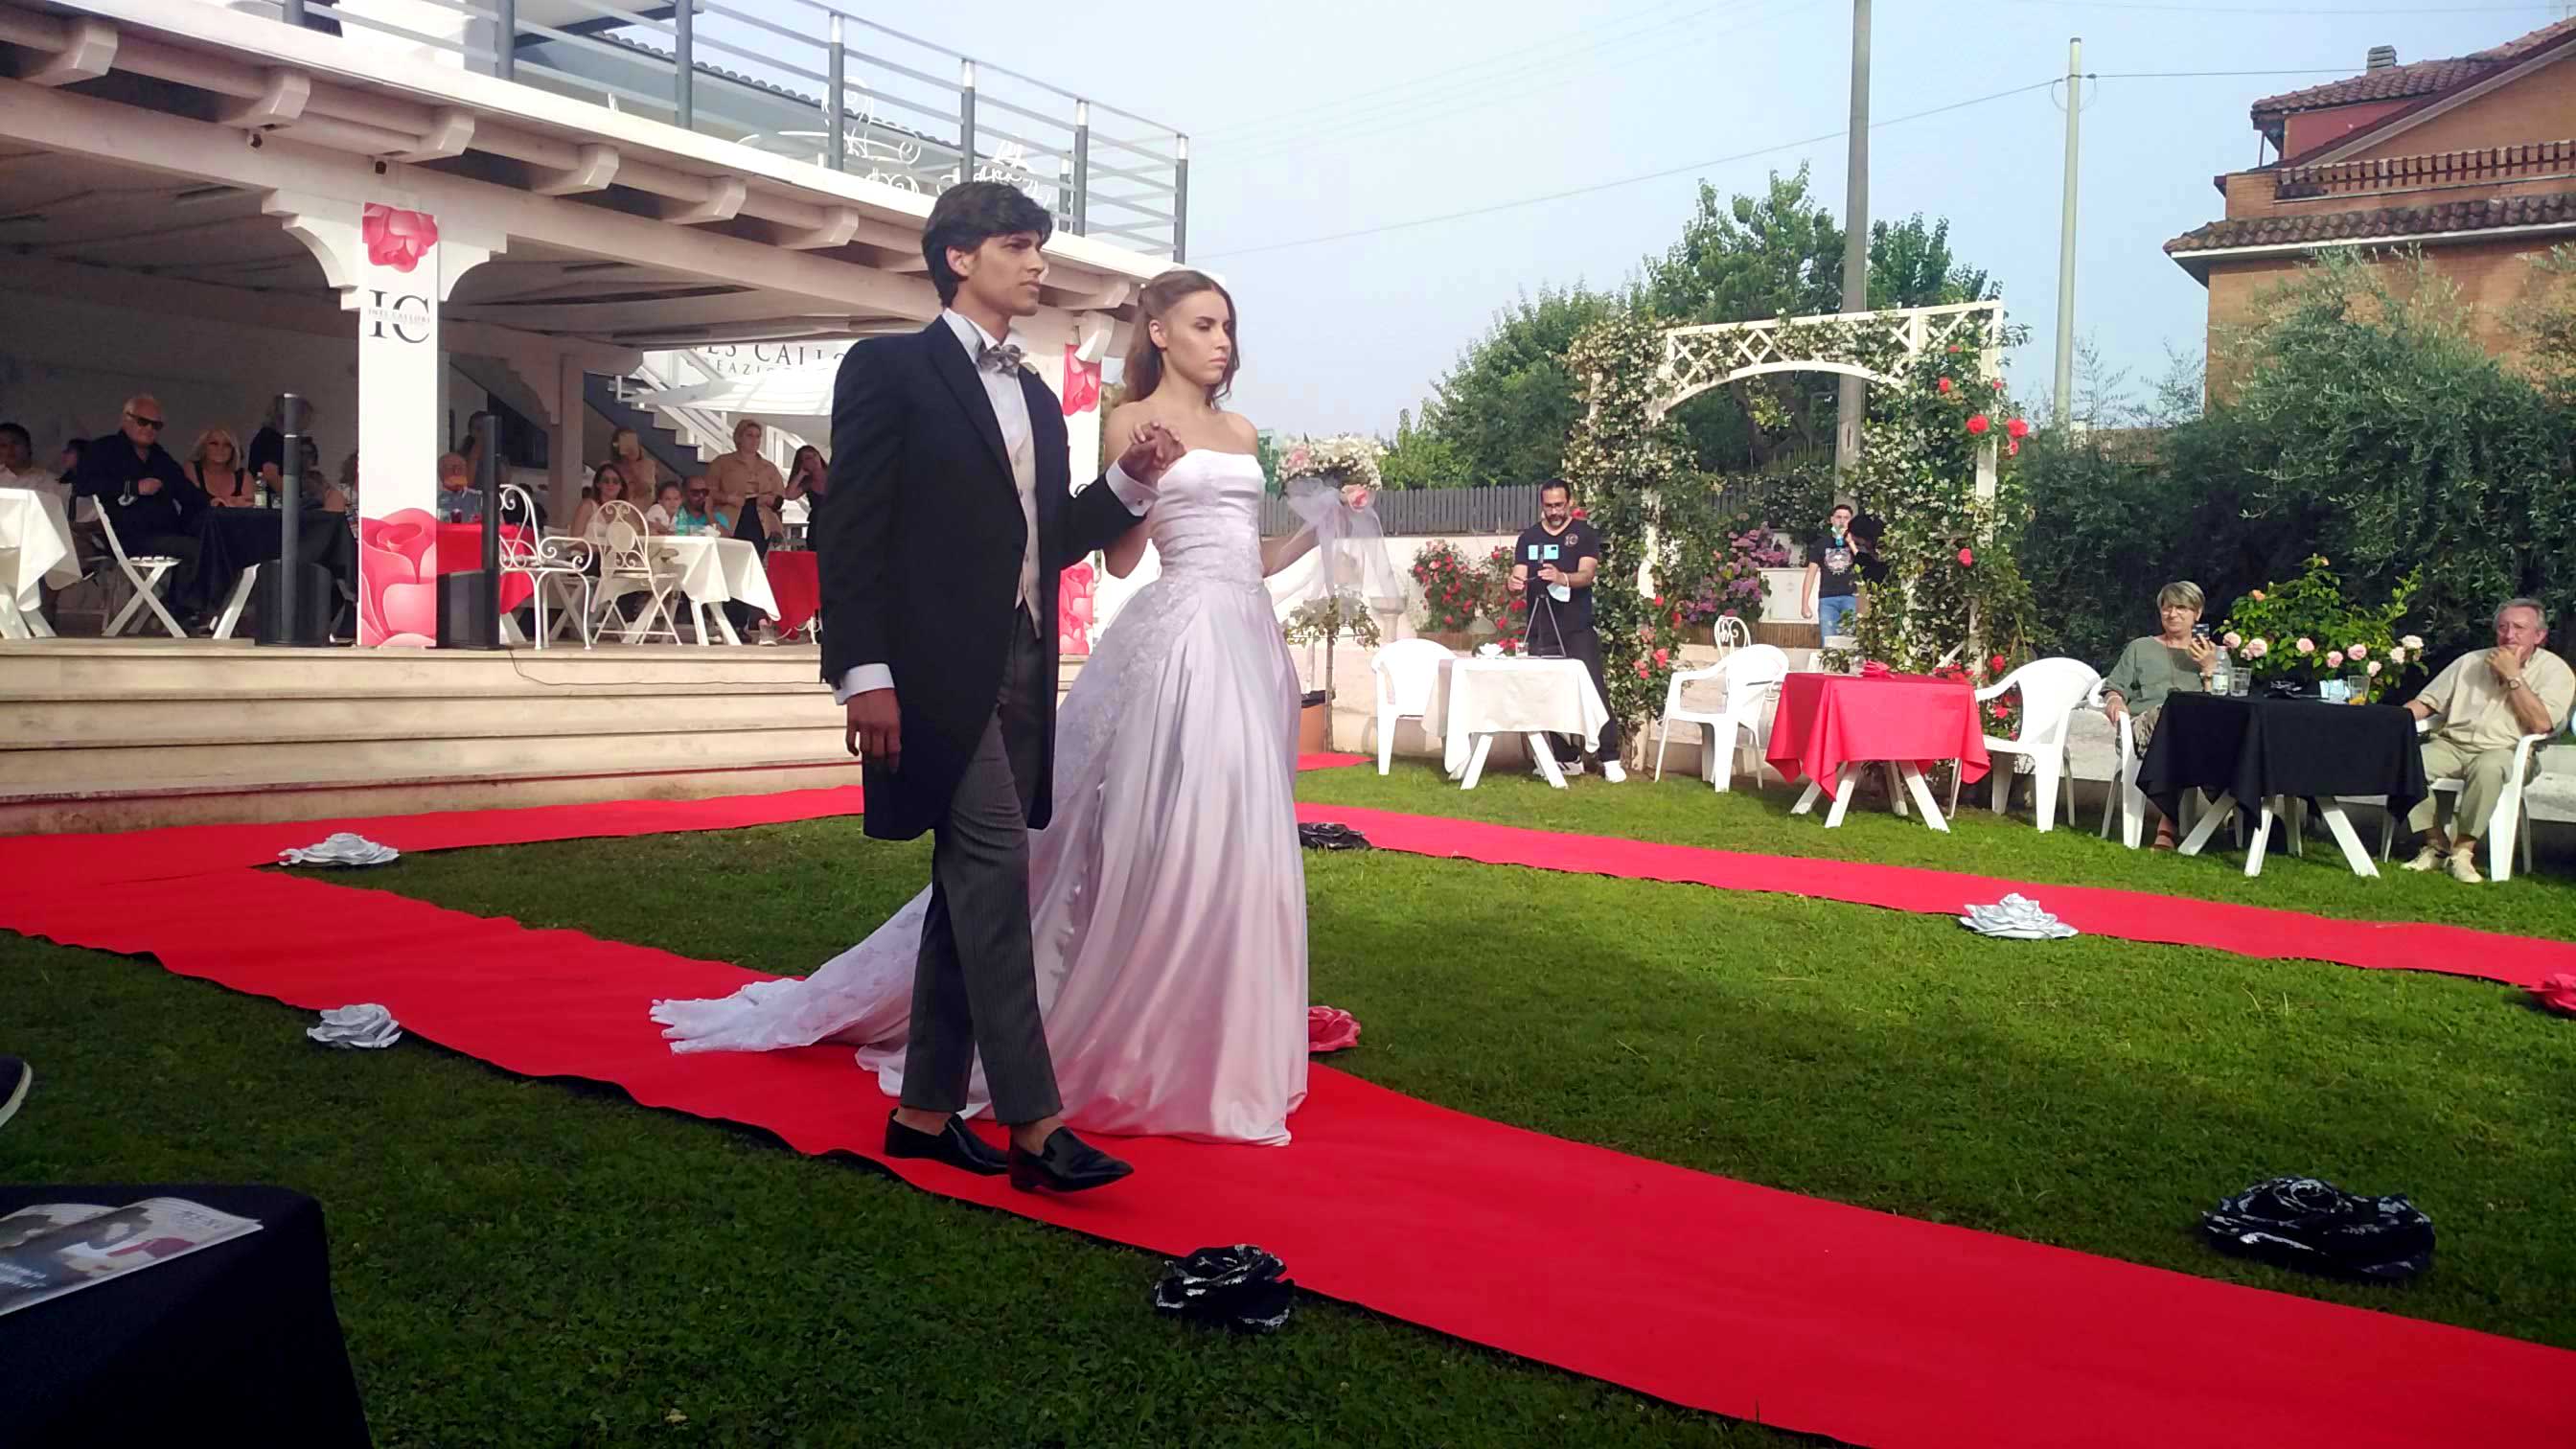 Abiti sposo : Eleonora Giamberduca presenta un abito da matrimonio per uomo. Location villa Aurora - Frascati. Vestiti su misura Elins moda a Roma foto4